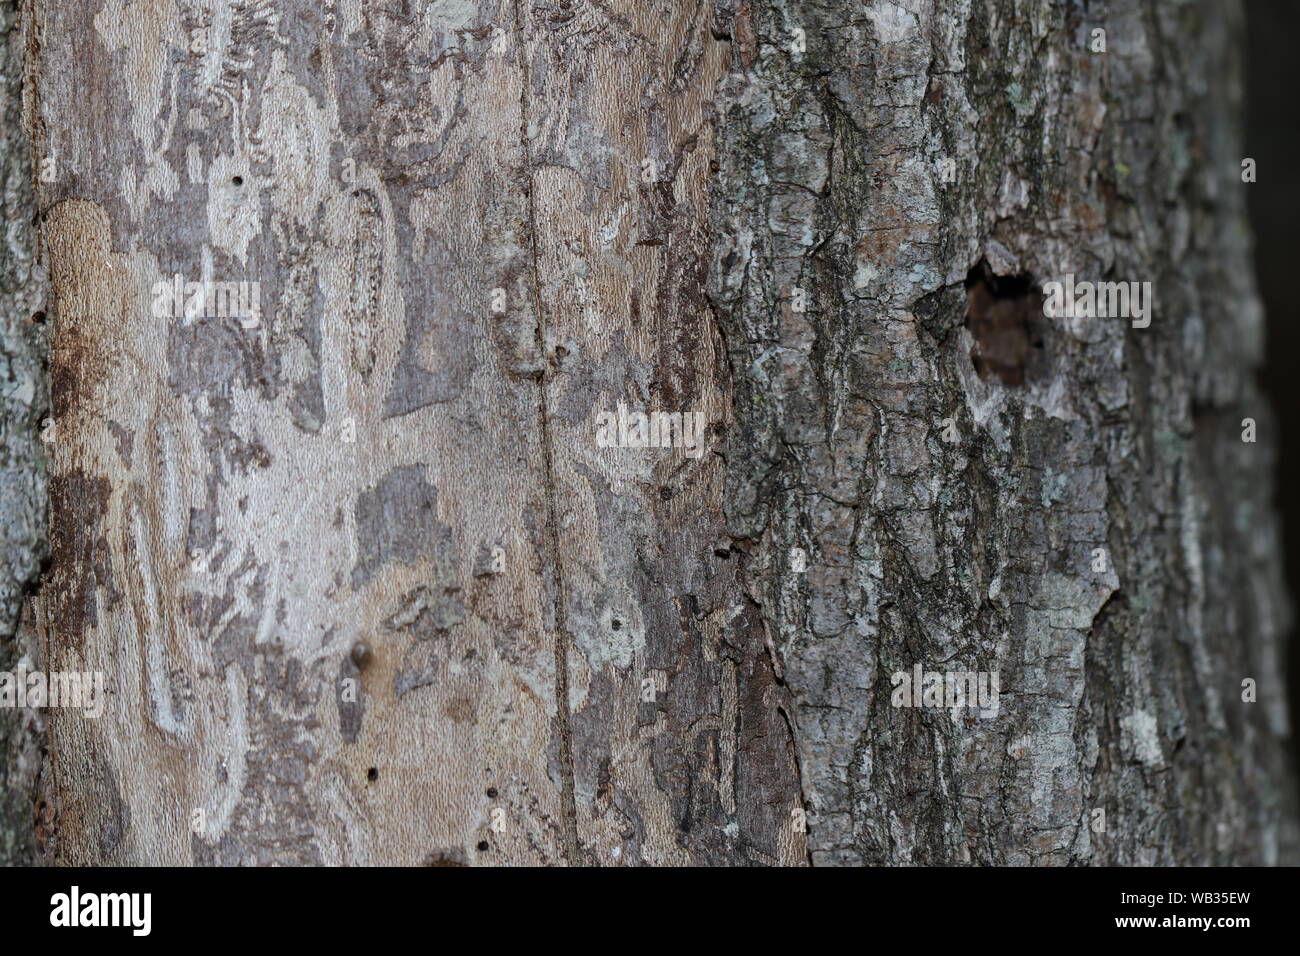 La corteccia di un albero di olmo latino ulmus o frondibus ulmi mostrante l'inizio della malattia dell'olmo olandese chiamato anche grafiosi del olmo causato da un coleottero ed un fungo Foto Stock